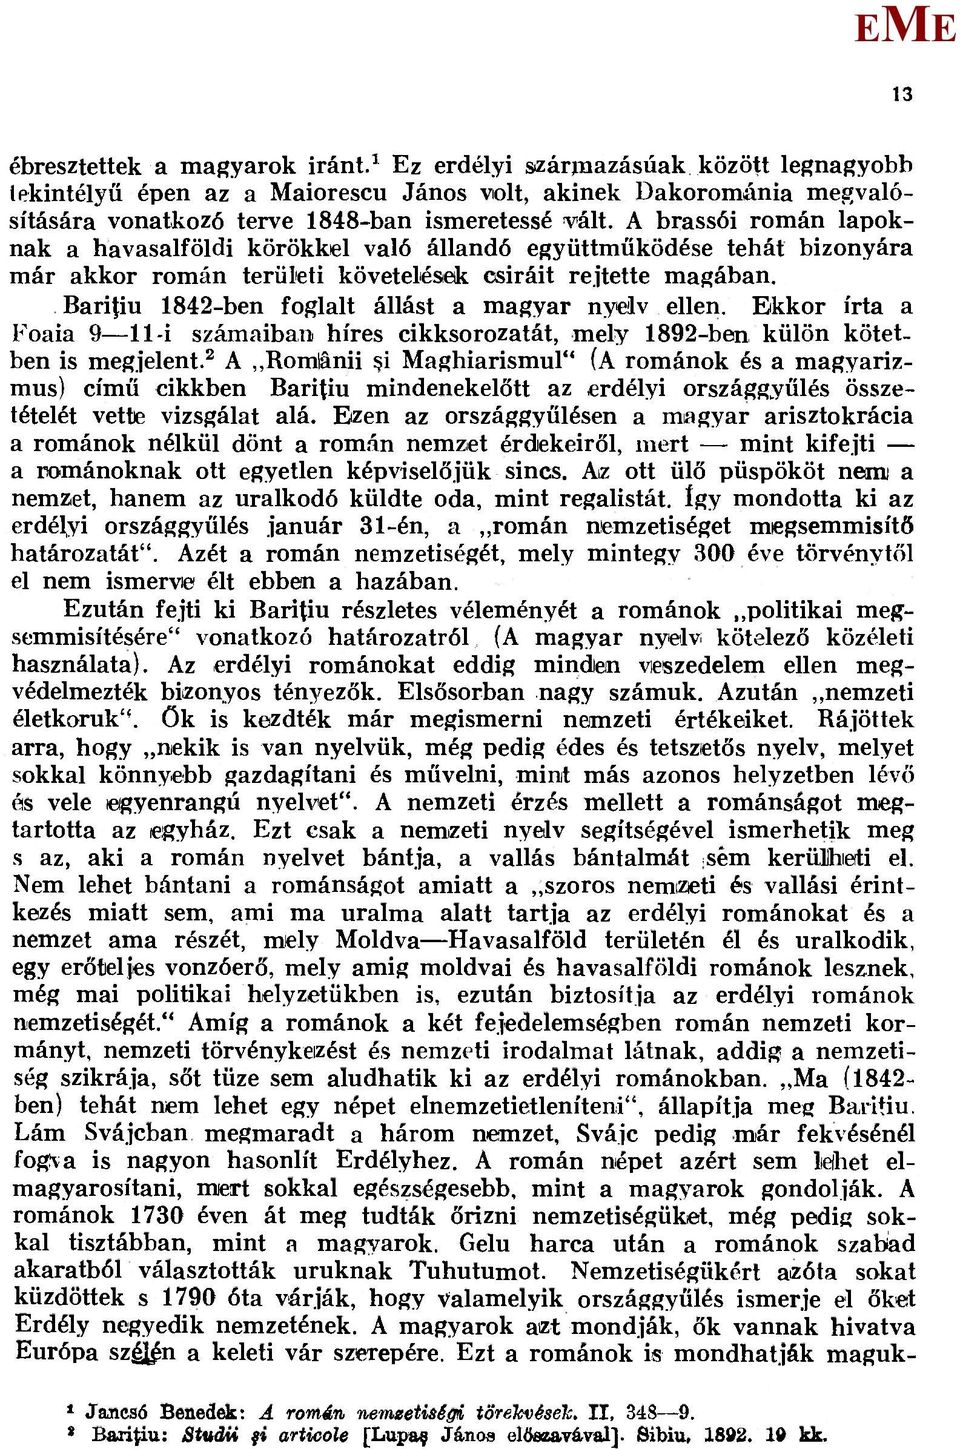 Baritiu 1842-ben foglalt állást a magyar nyelv ellen. kkor írta a Foaia 9 11-i számaiban híres cikksorozatát, mely 1892-ben külön kötetben is megjelent.